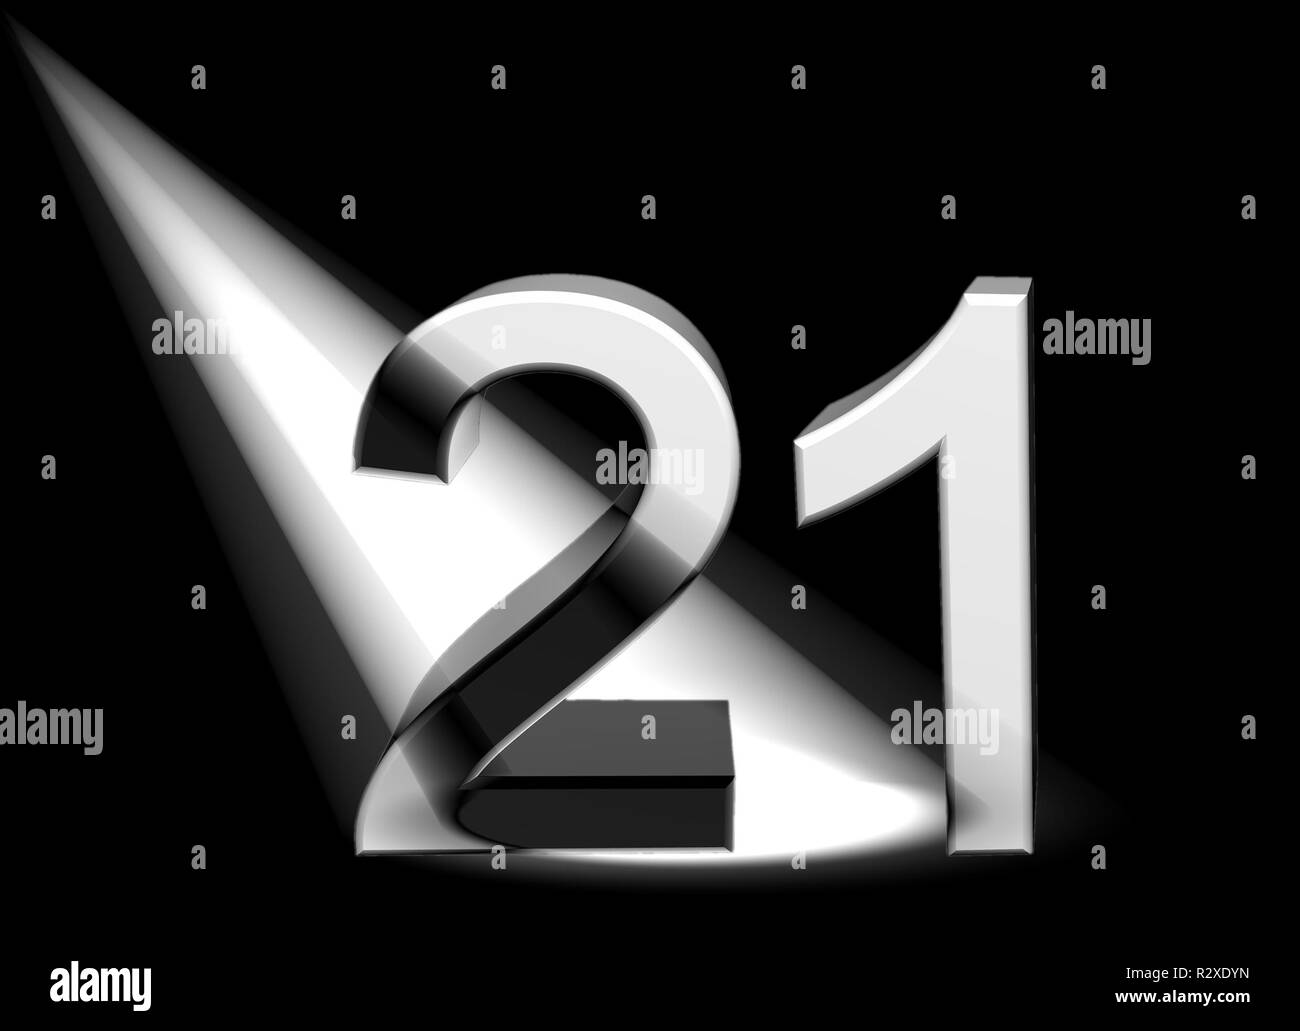 21 Число в 3d. 21 means